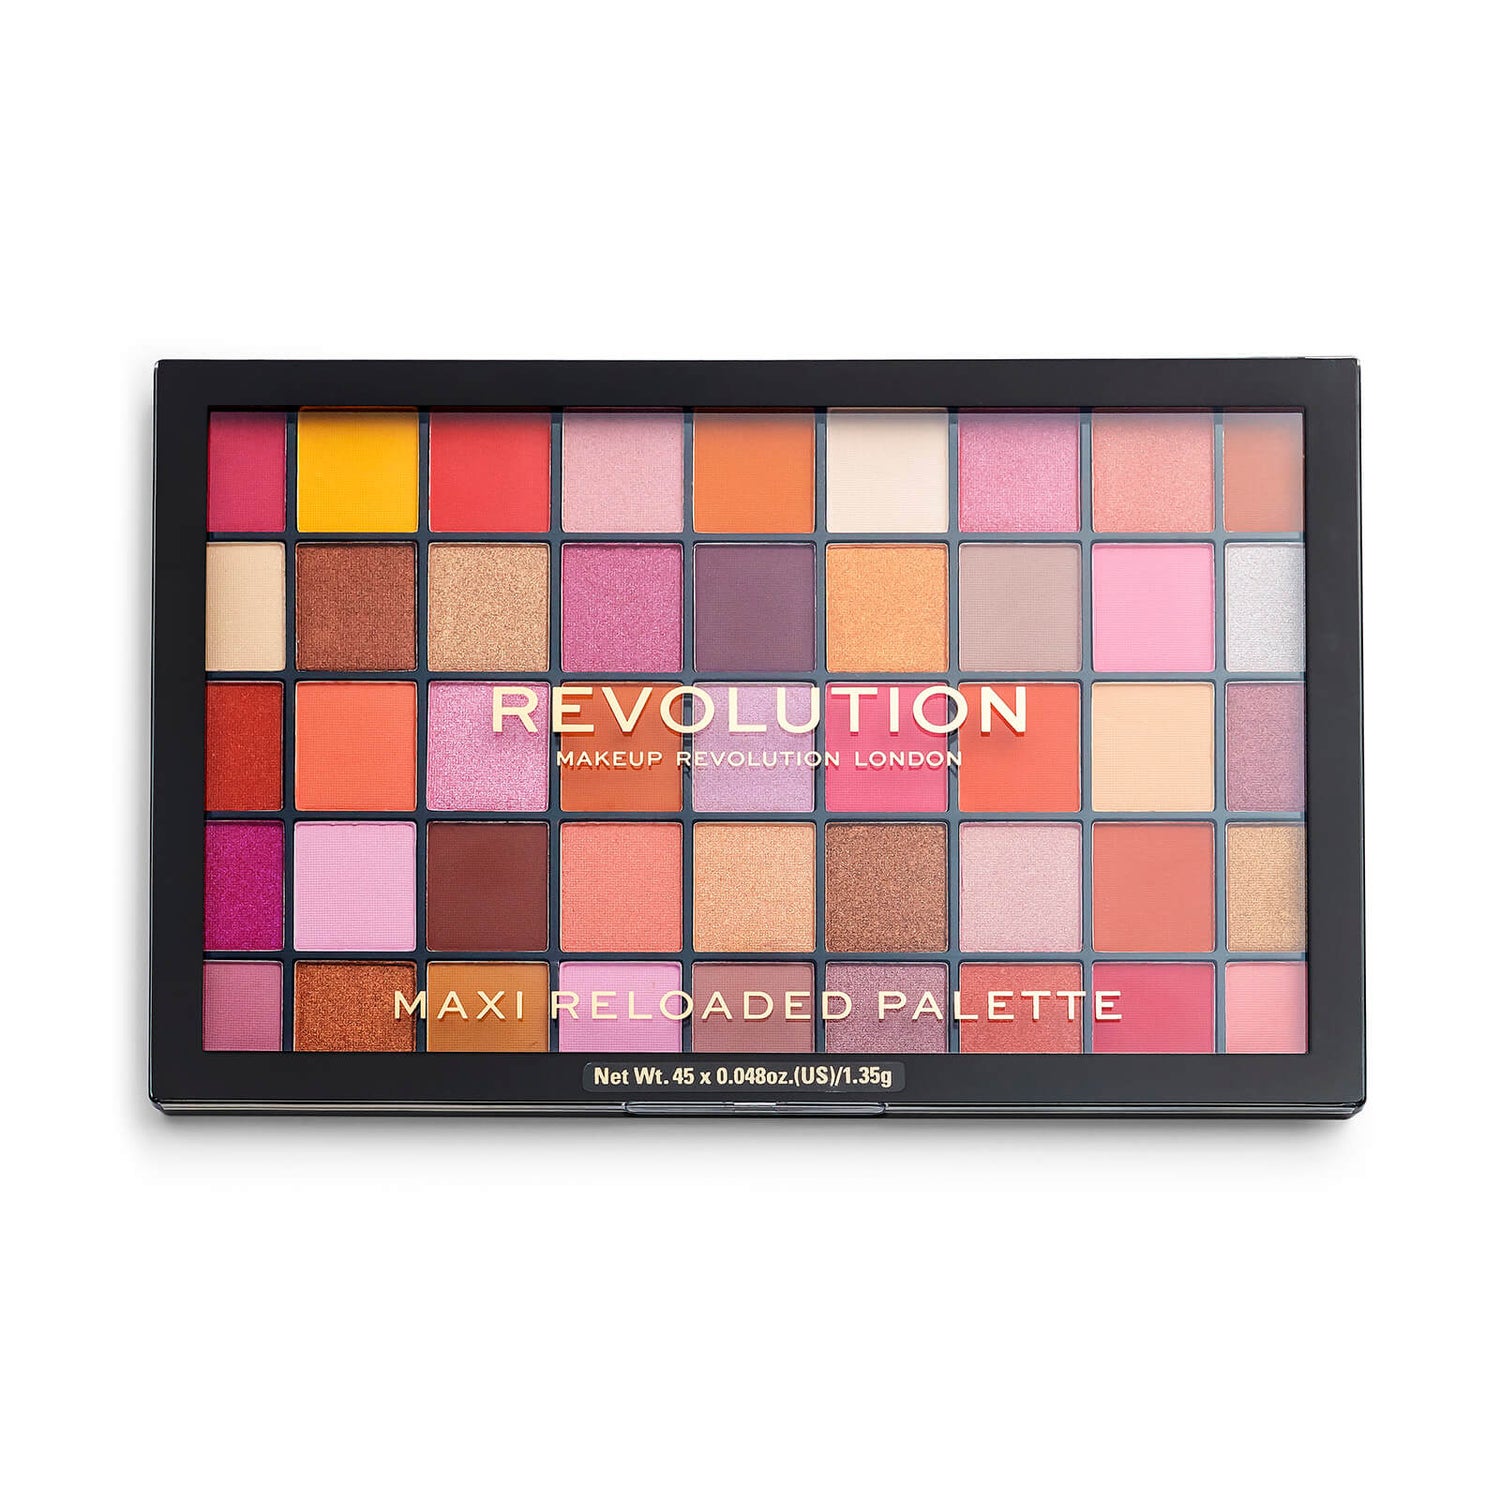 Makeup Revolution Maxi Reloaded Palette - Big Big Love